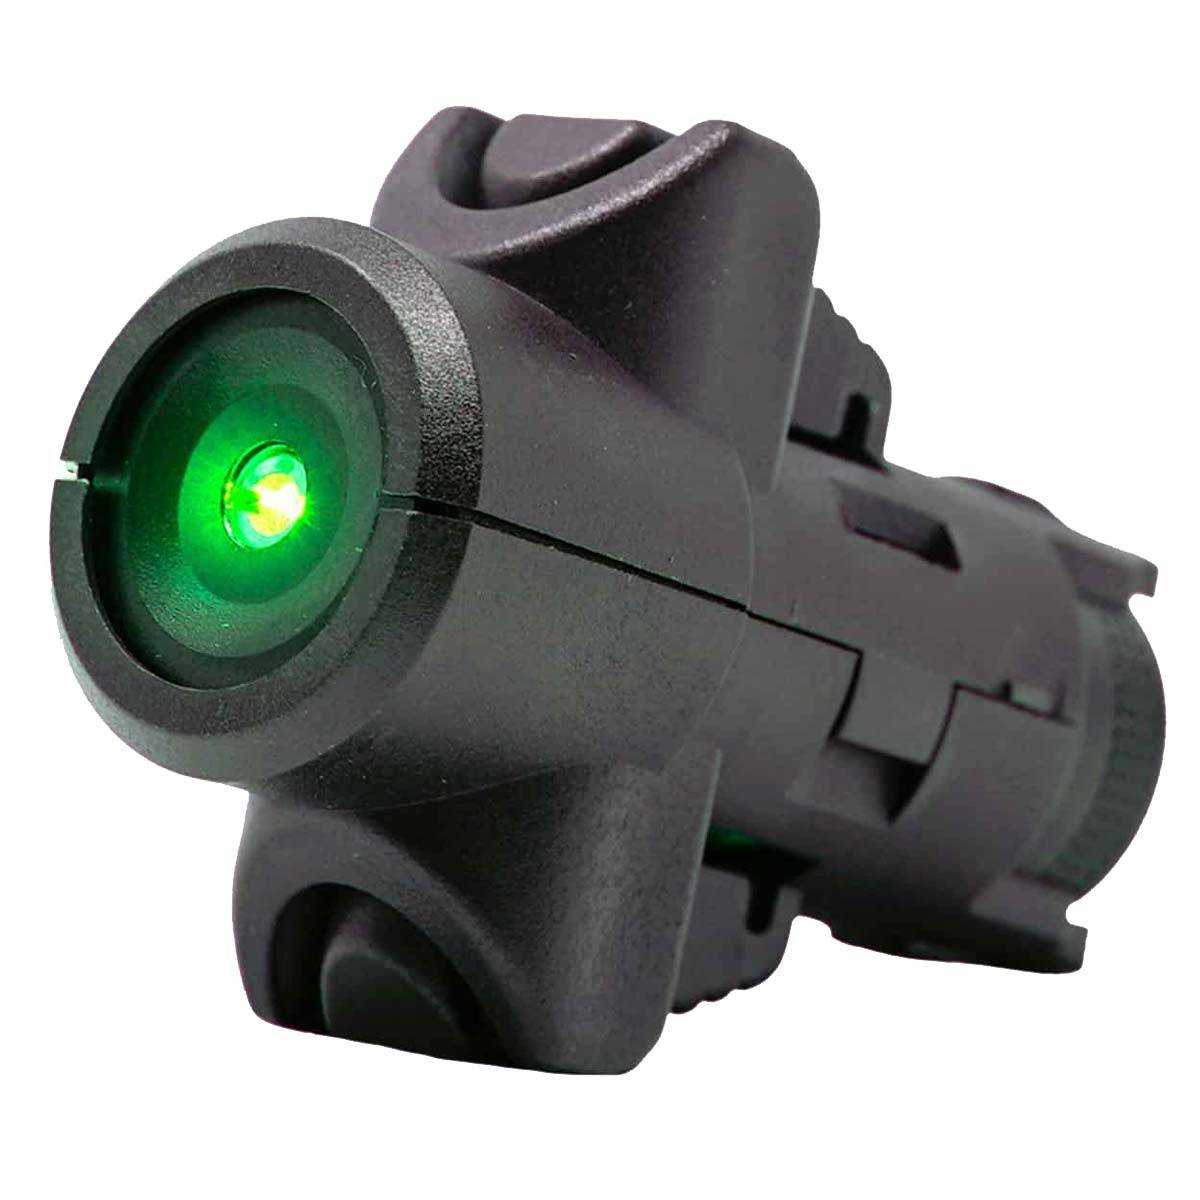 CAA MCK Targeting Laser